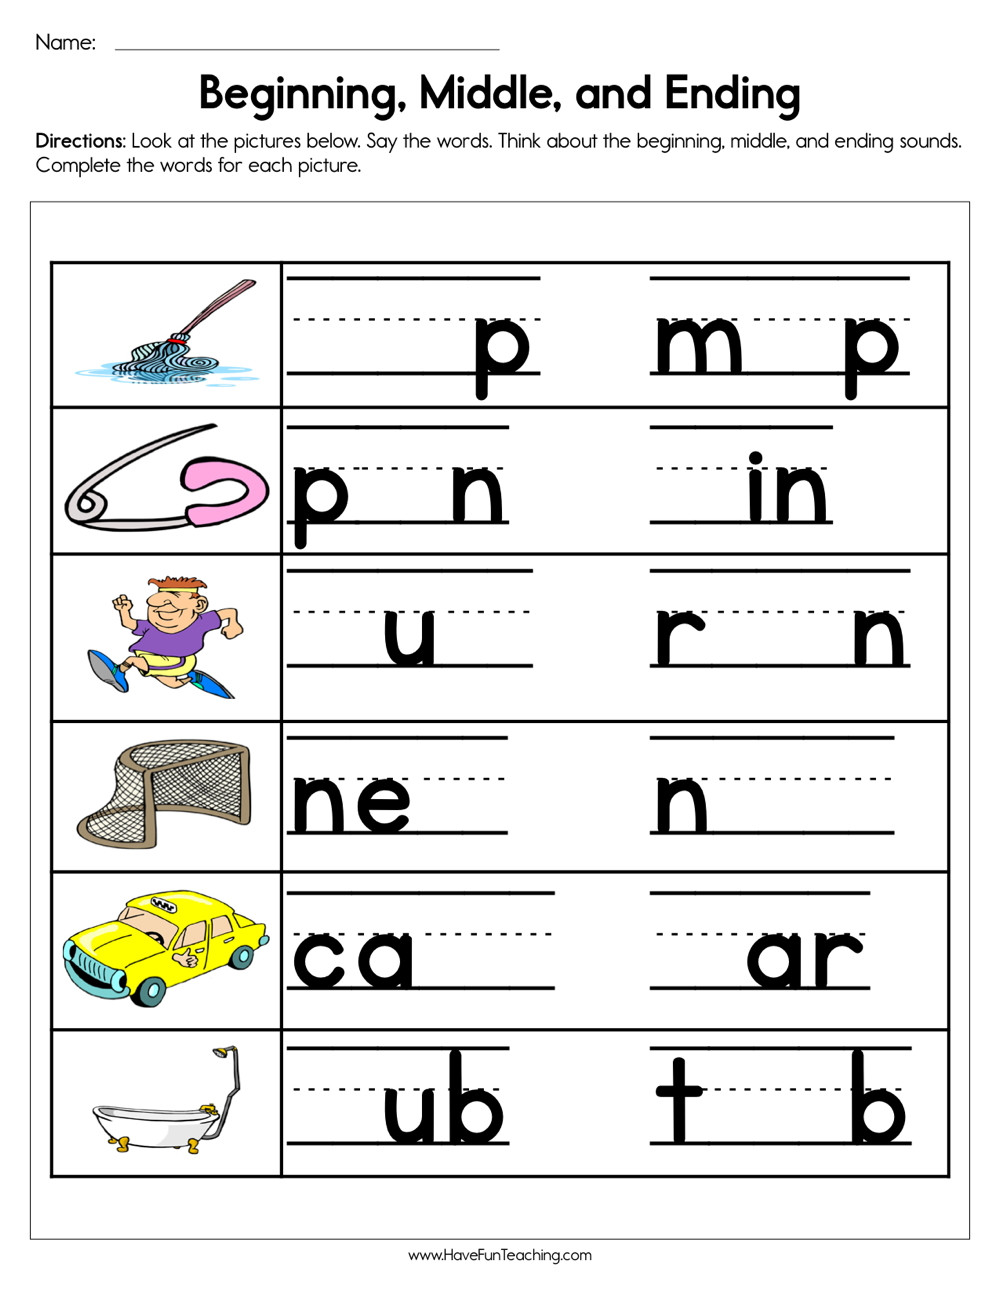 Medial sounds Worksheets First Grade Beginning Middle and Ending sounds Worksheet